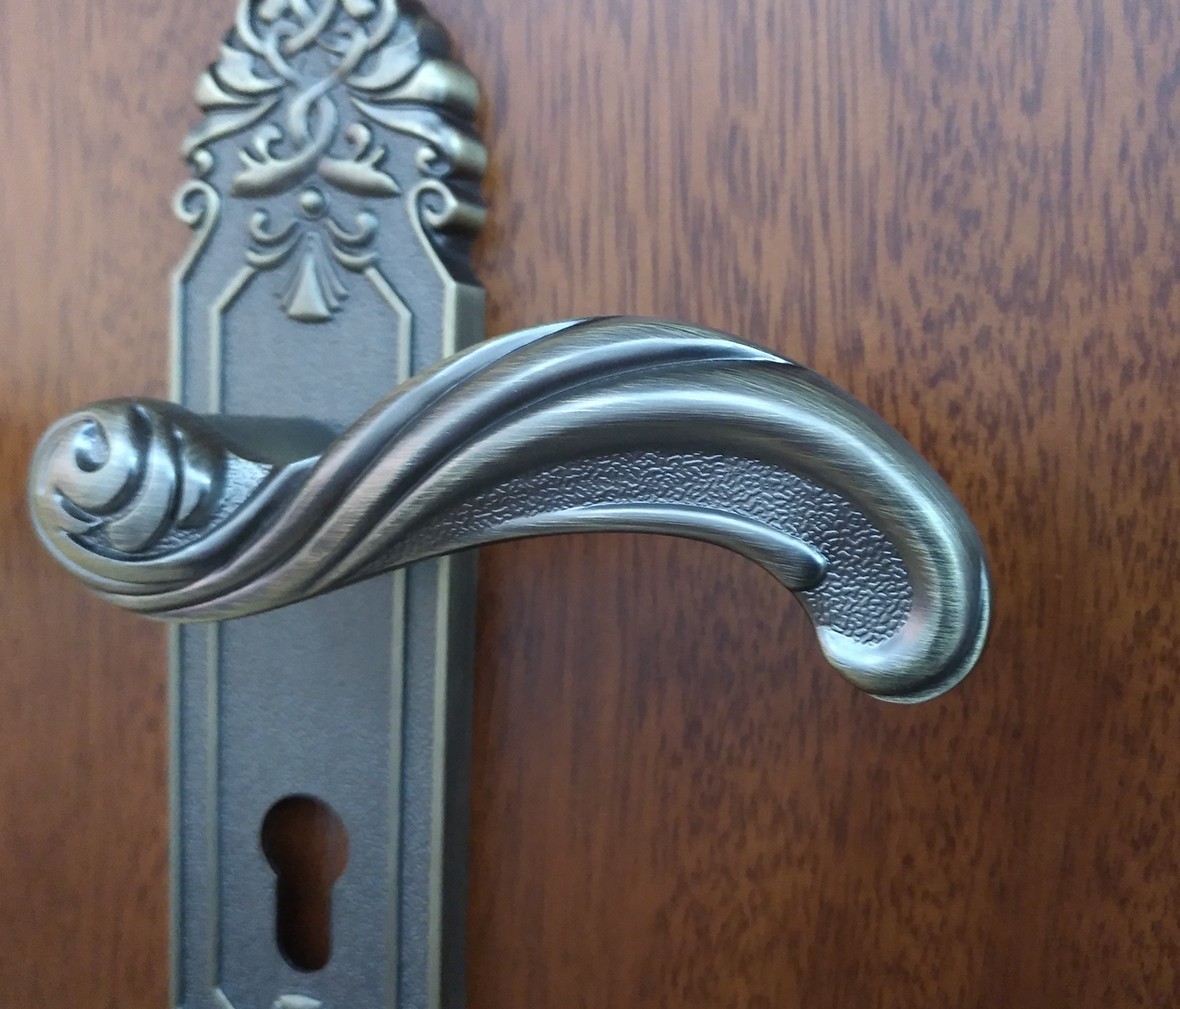 晾霸五金 米开朗580793MAB型号门锁 锌合金材质 优质门锁 情景 细节